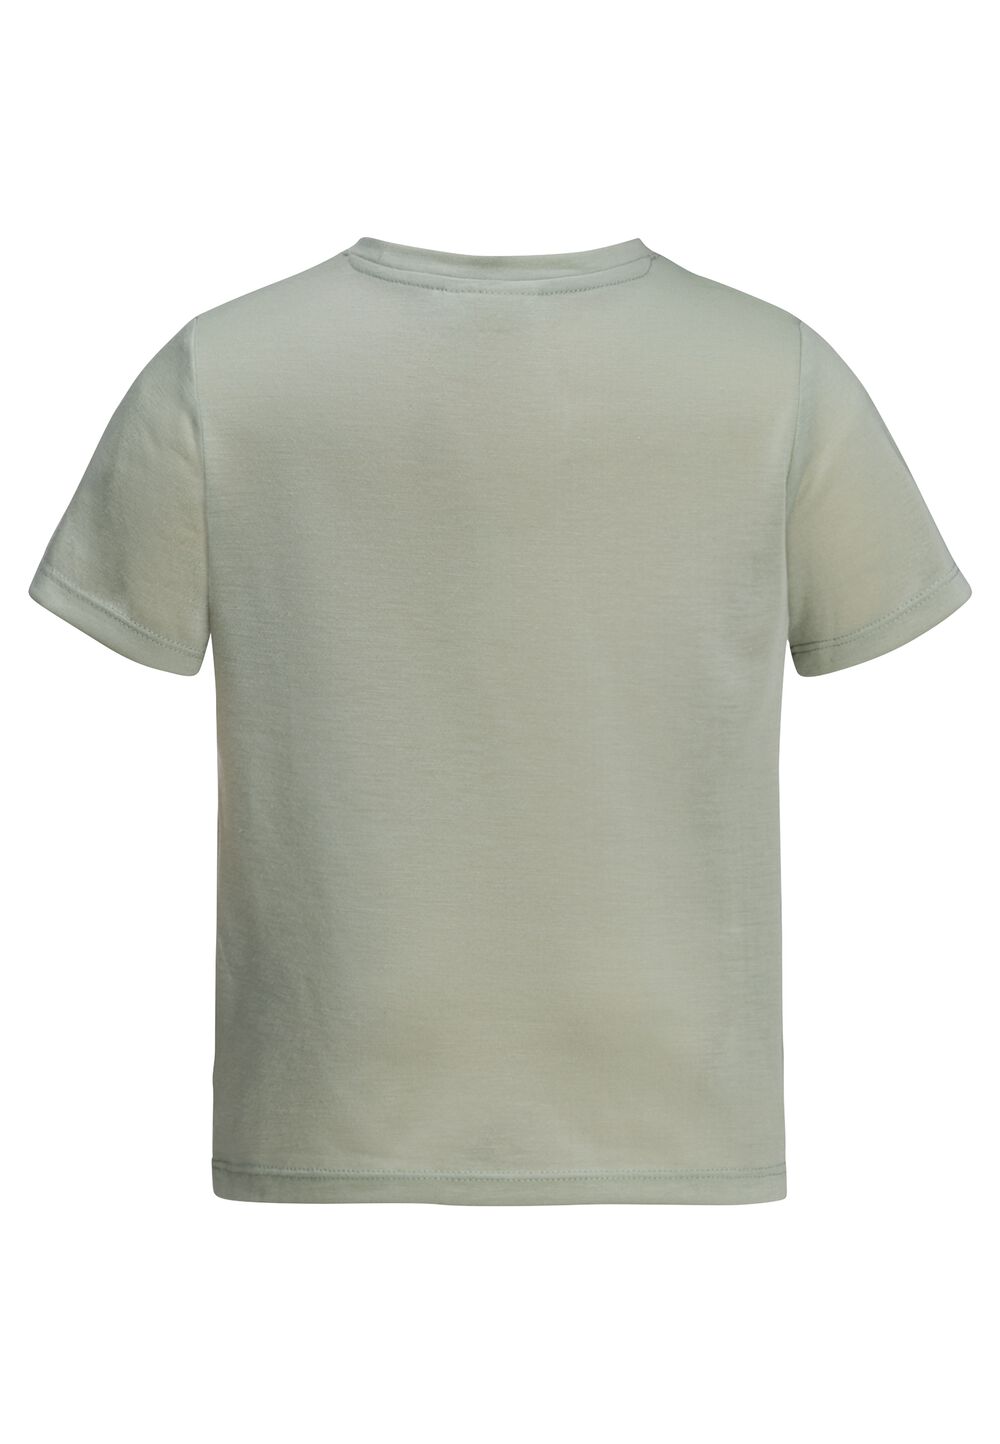 Jack Wolfskin Smileyworld Camp T-Shirt Kids Functioneel shirt Kinderen 140 mint leaf mint leaf